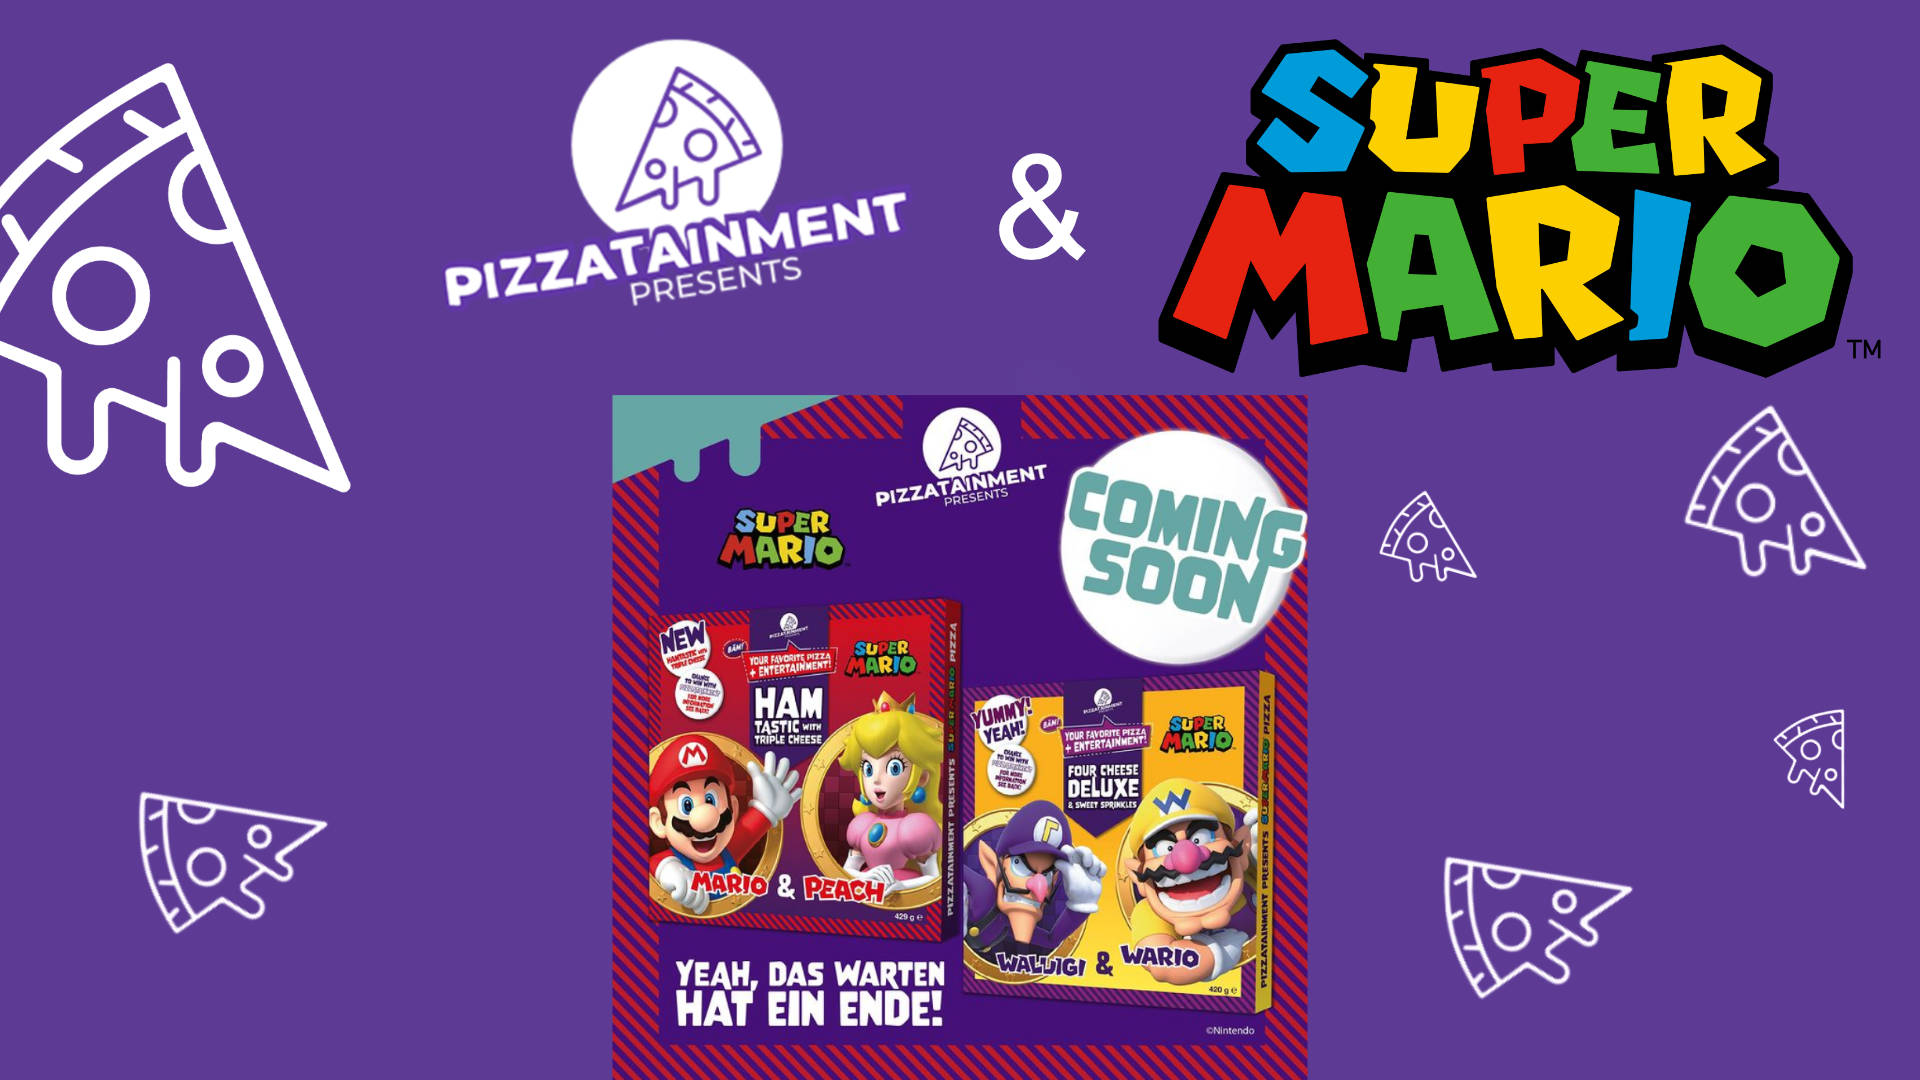 Pizzatainment: Super Mario-Pizza-Sortiment wird erweitert